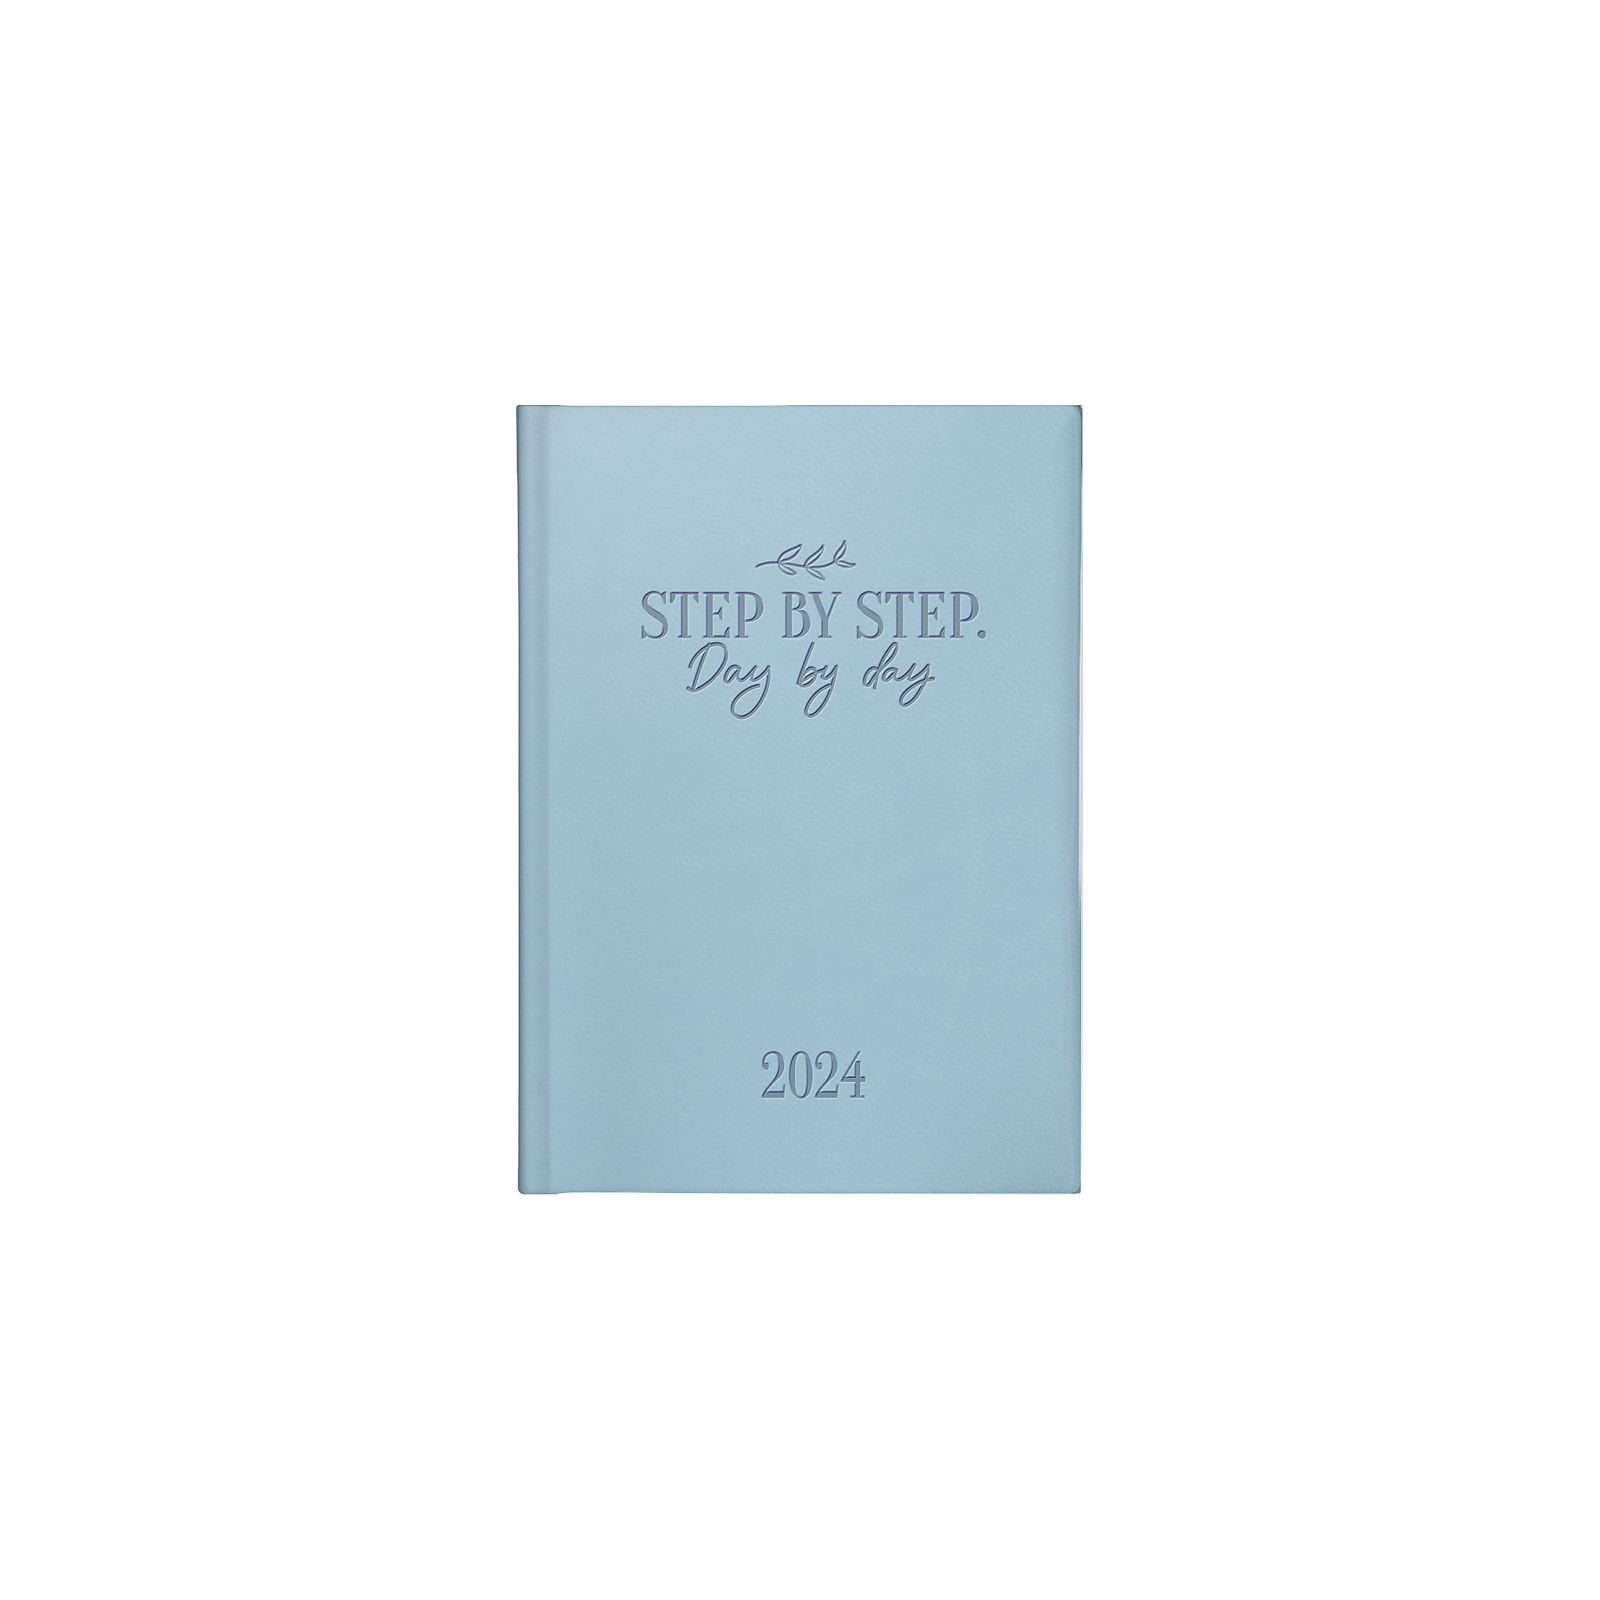 Еженедельник Brunnen датированный 2024 Torino Trend карманный A6 10х14 см 184 страницы Красный (73-736 31 204)